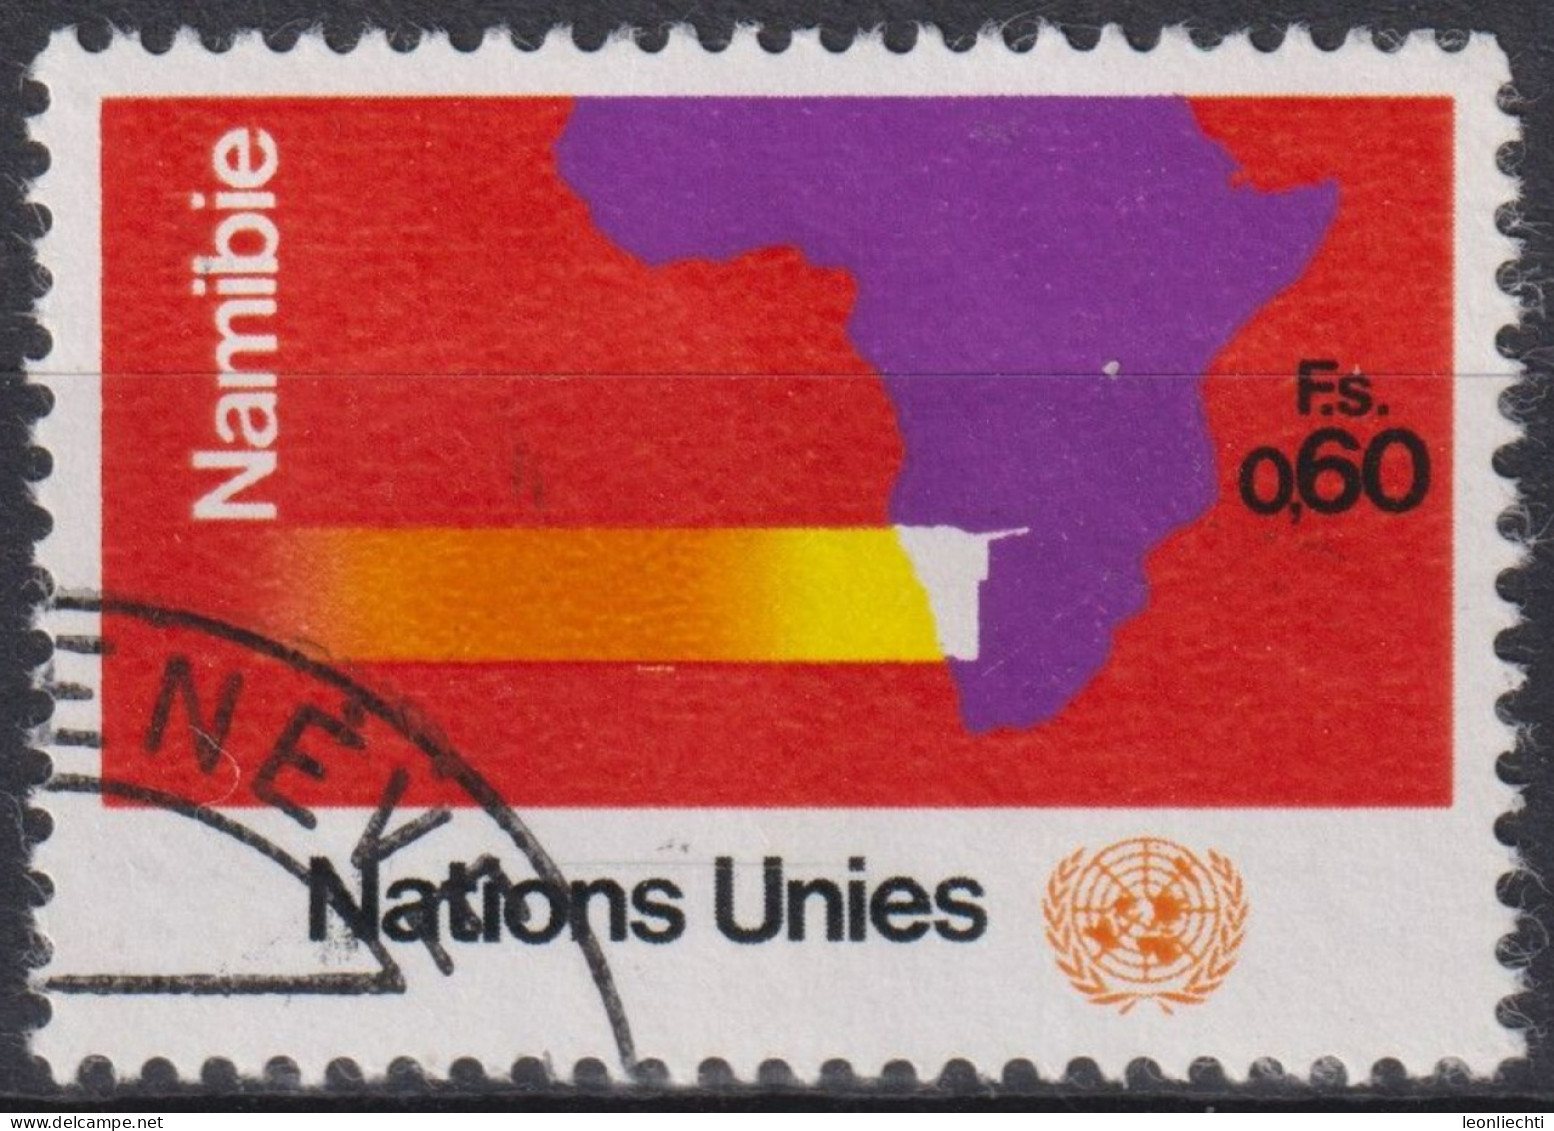 1973 UNO Genf ° Mi:NT-GE 34, Yt:NT-GE 34, Zum:NT-GE 34, Namibia, Landkarte Afrika Mit Namibia - Usati